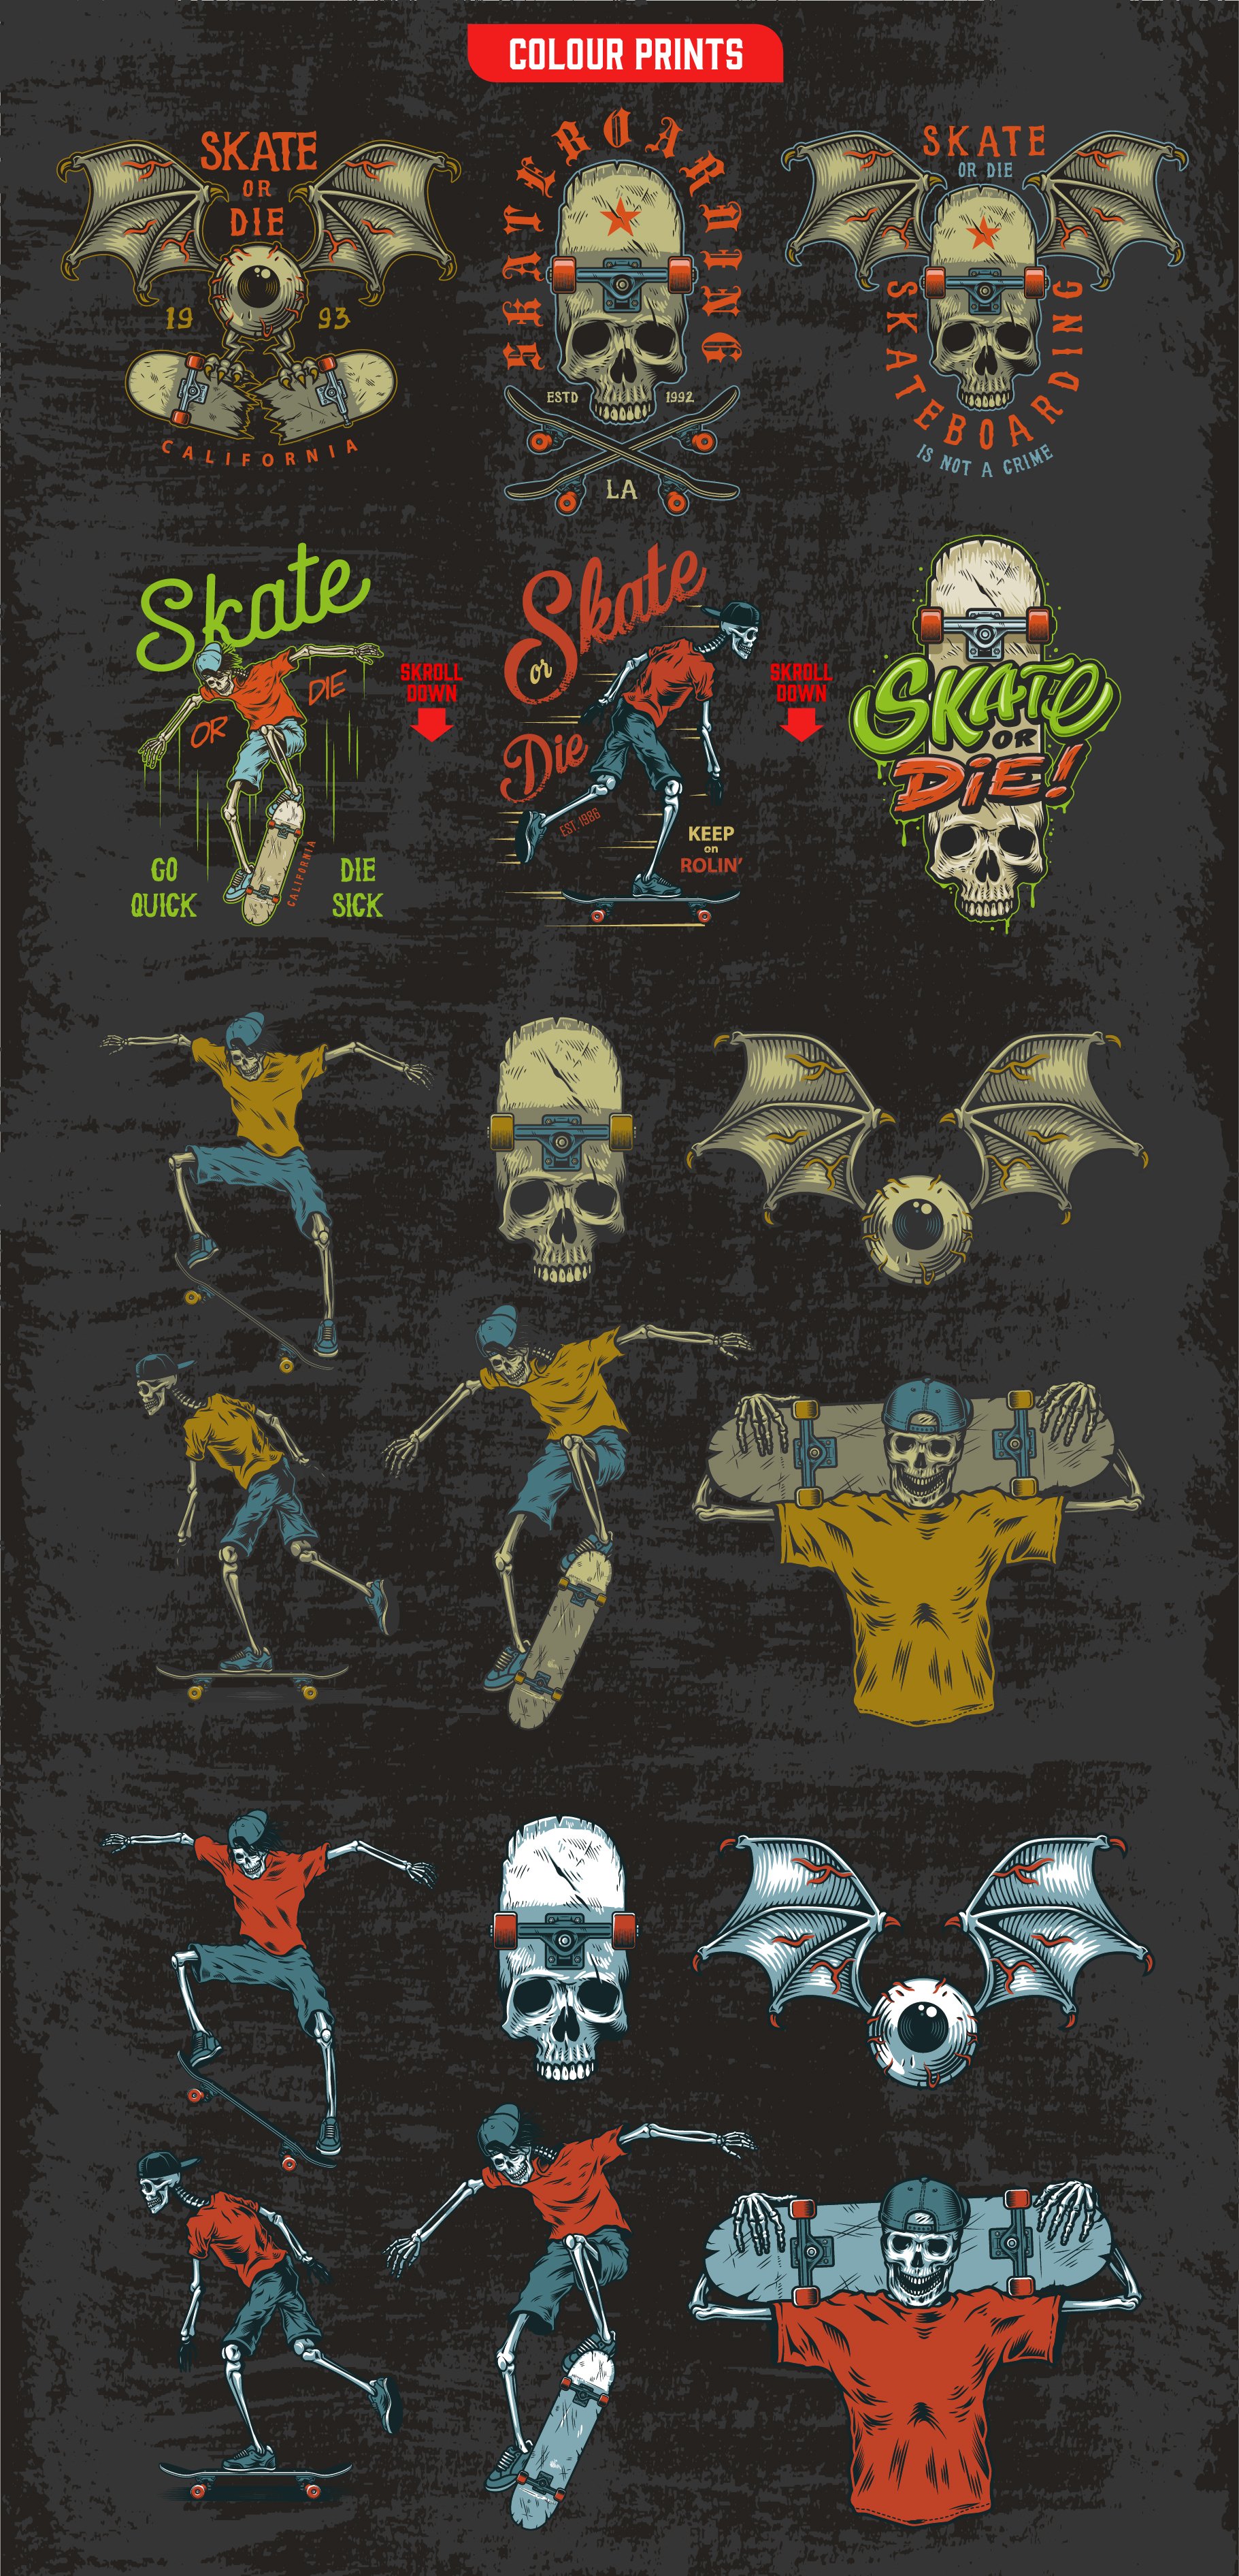 嘻哈风骷髅骨骼滑板T恤印花图案设计矢量图案